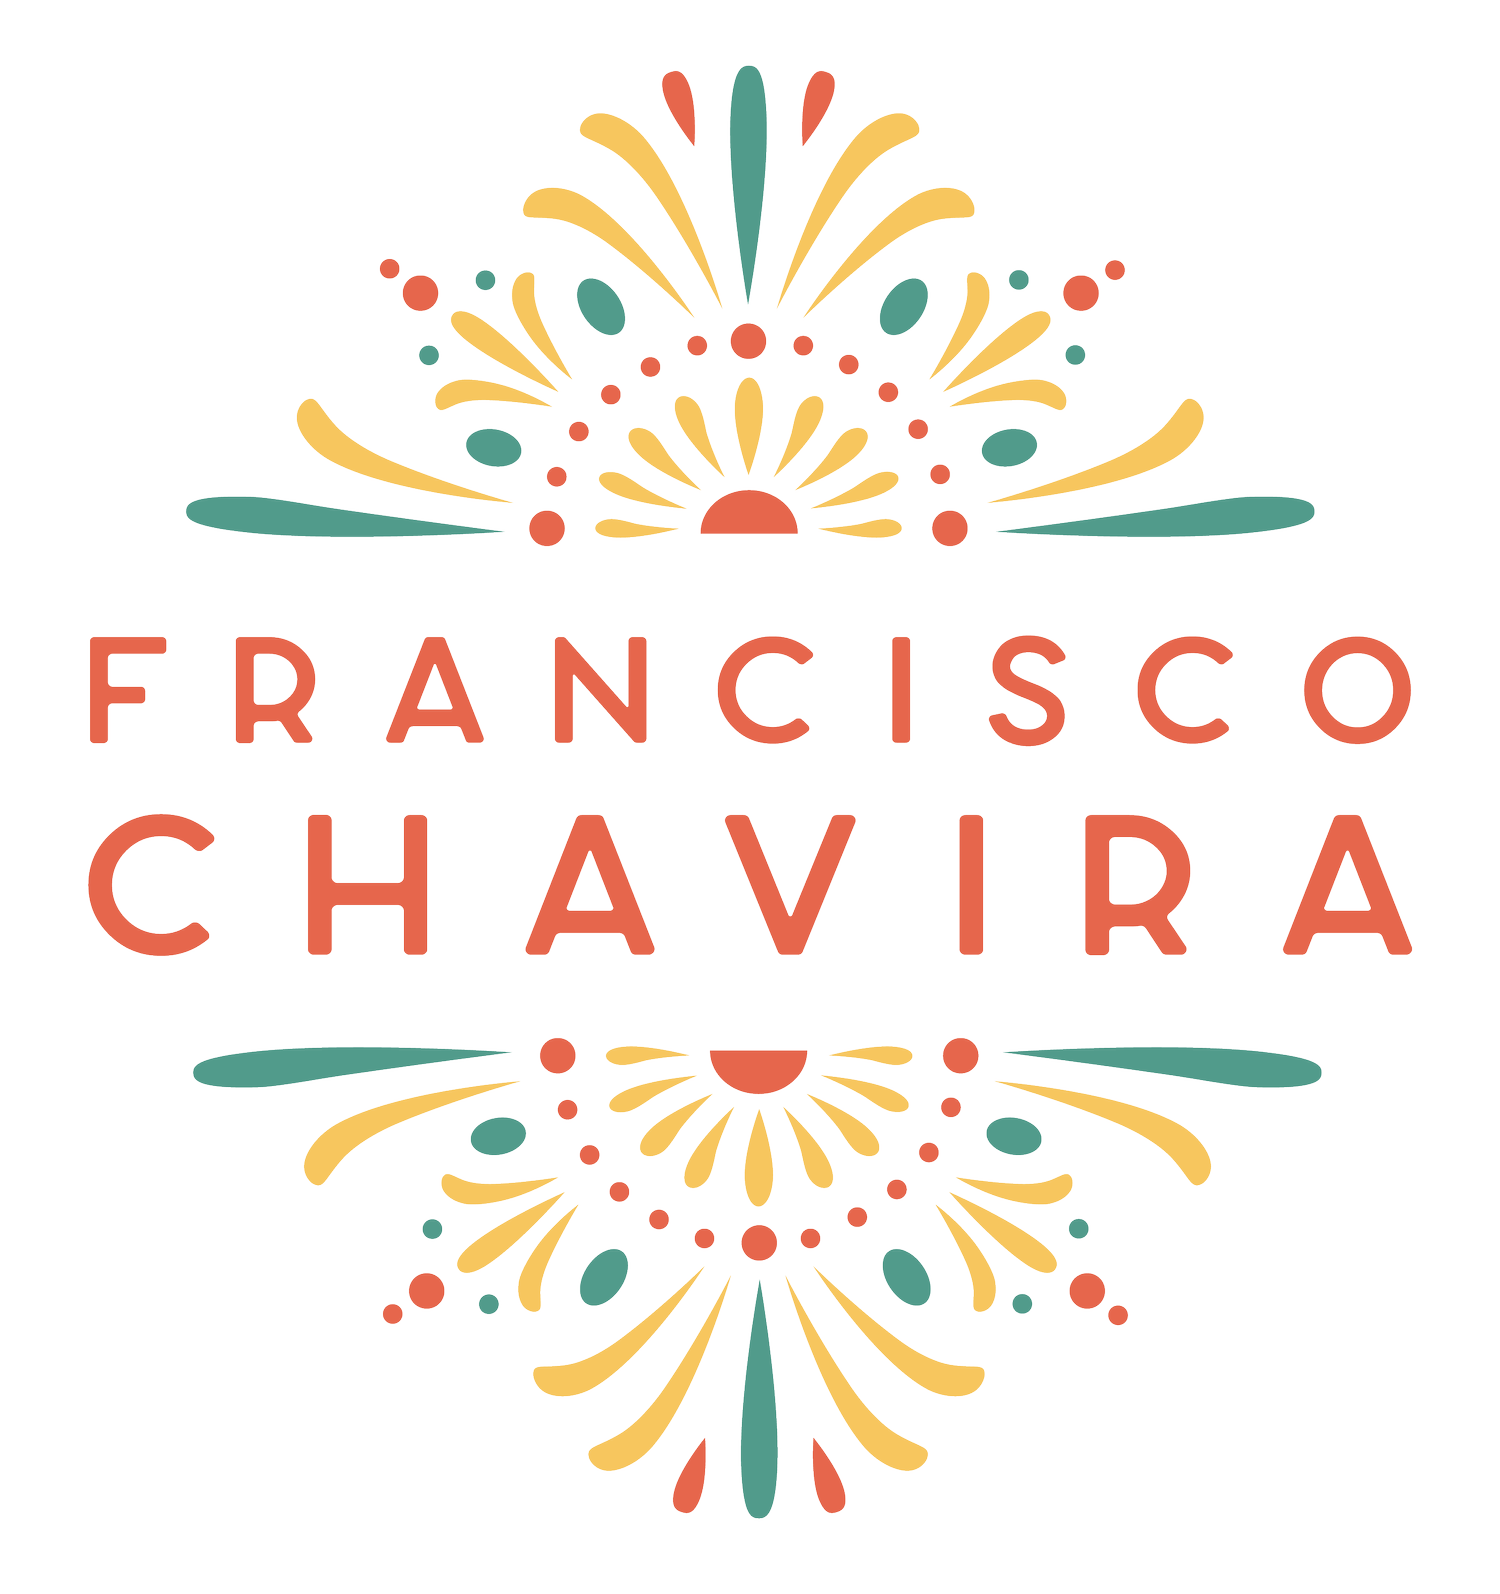 Francisco Chavira Commercial Photography Sacramento California